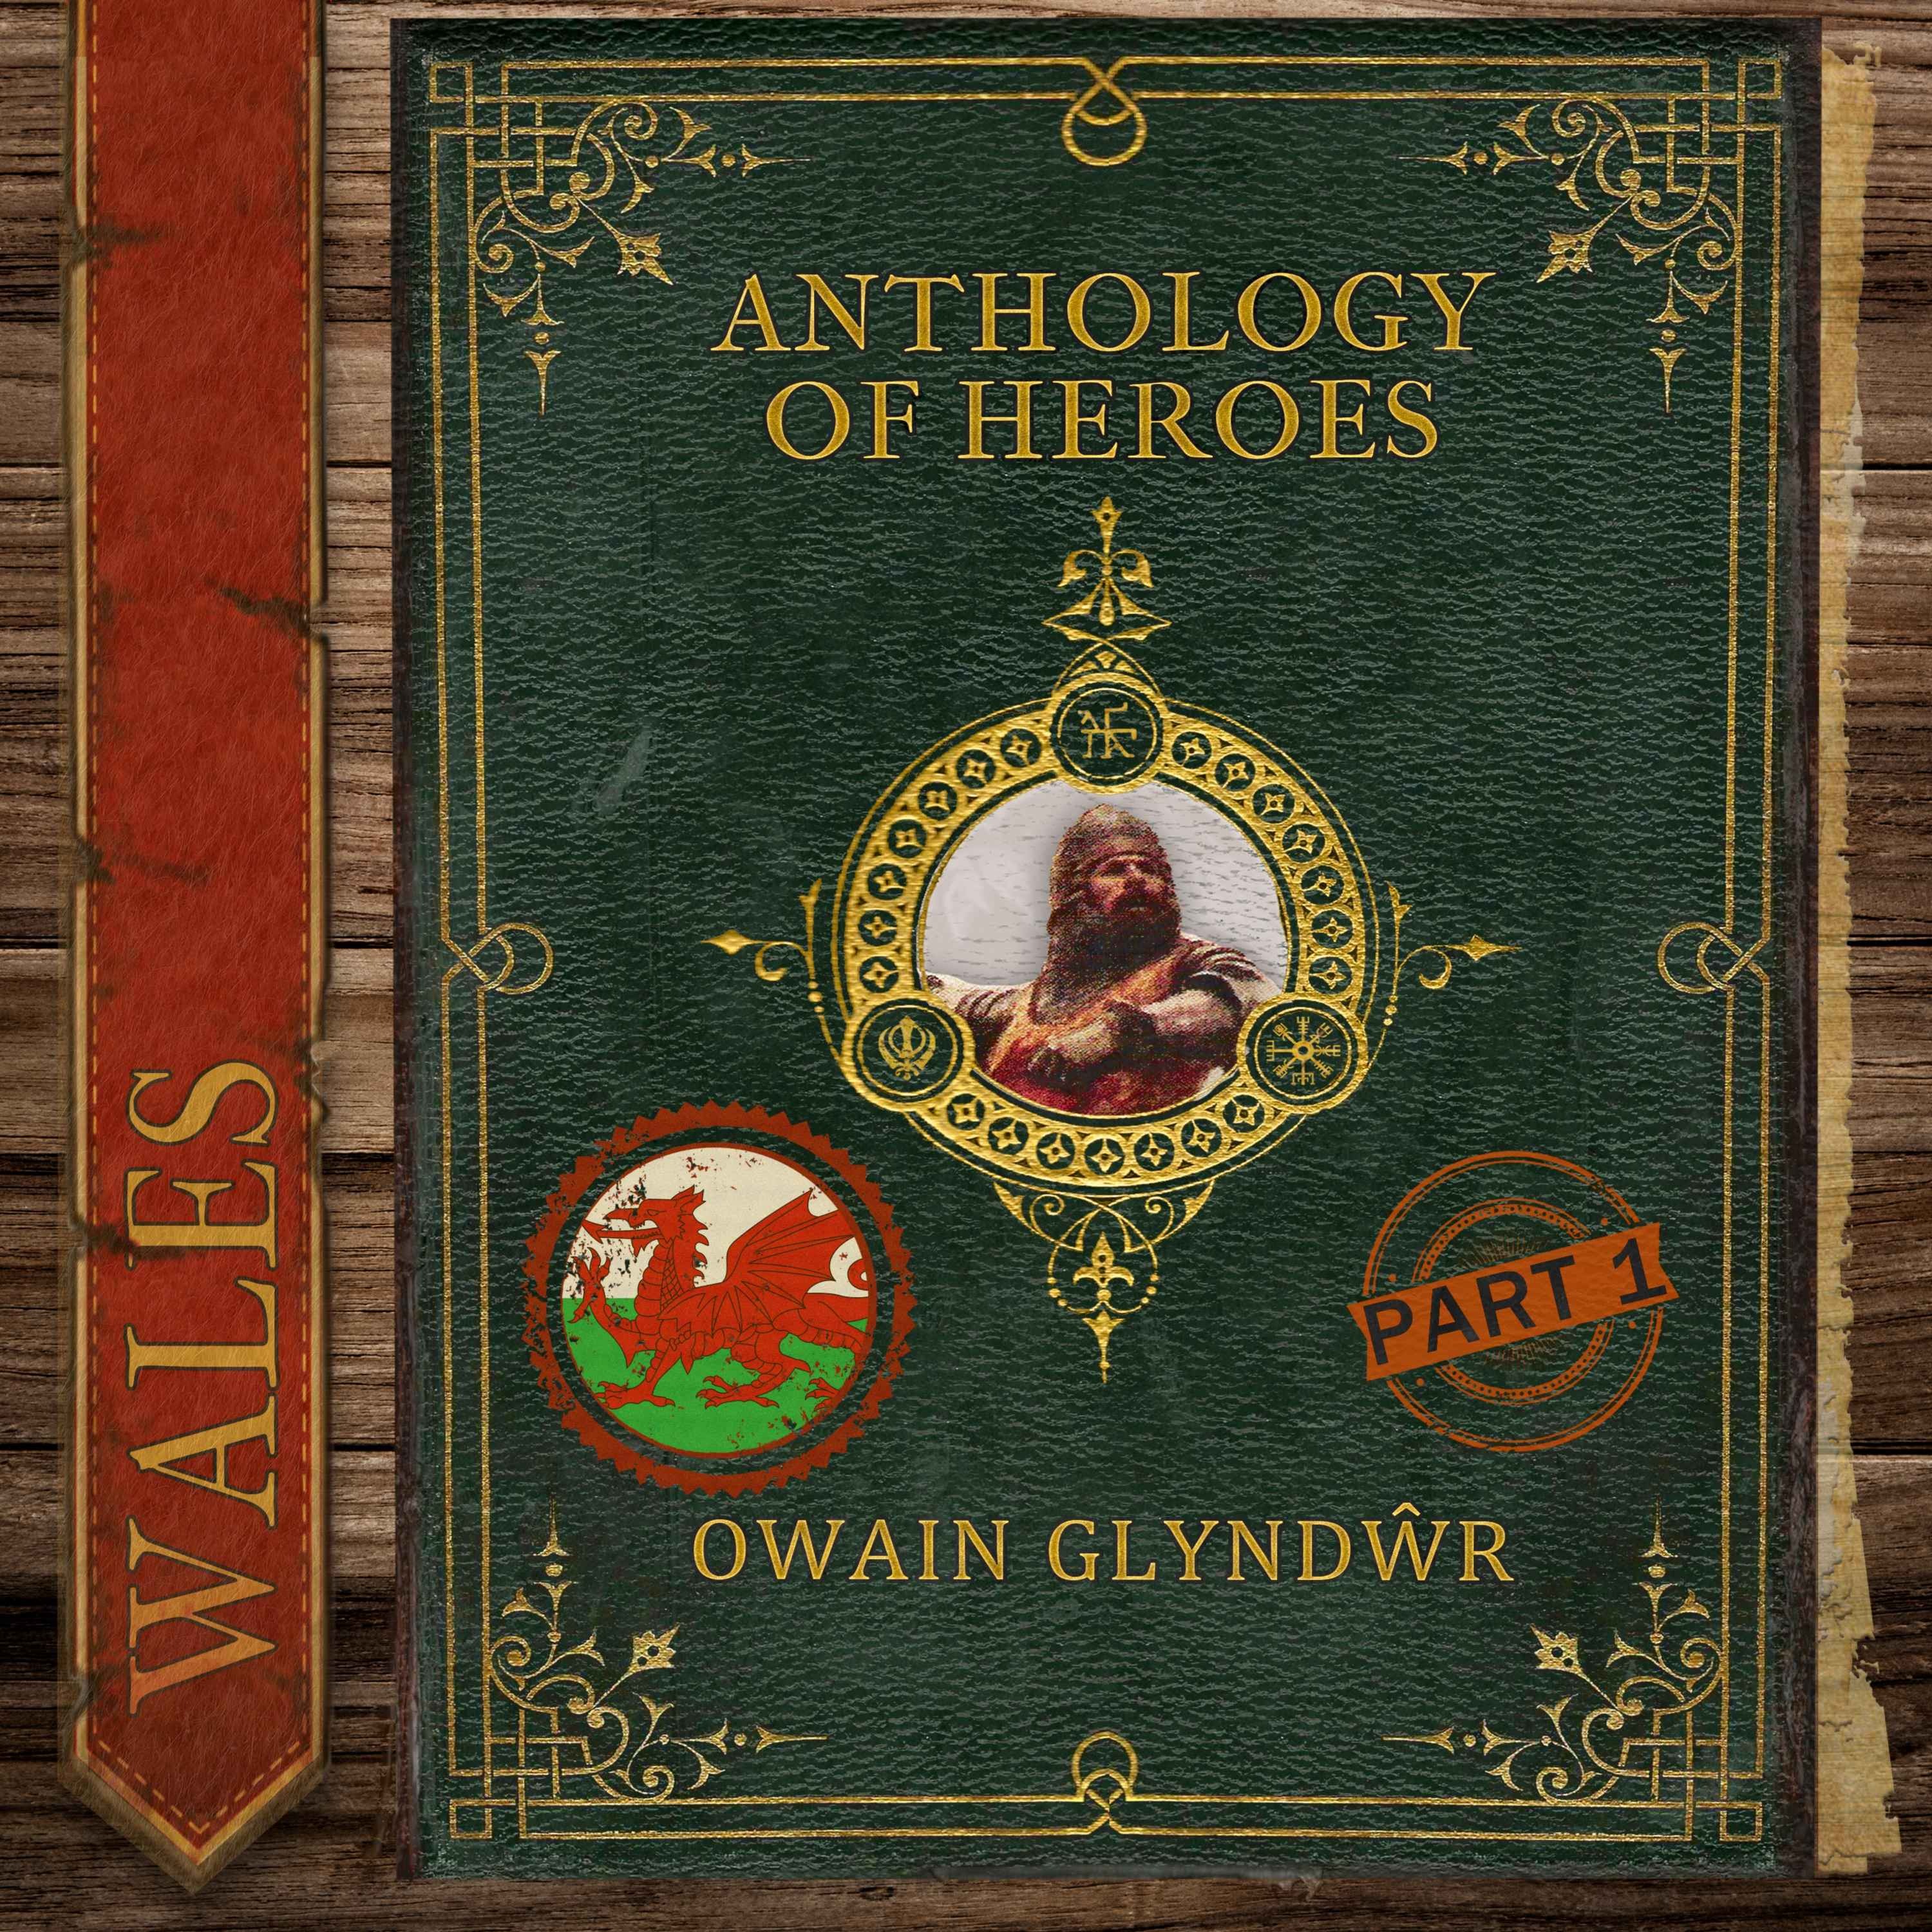 Owain Glyndŵr, The Last Prince of Wales (Part 1)